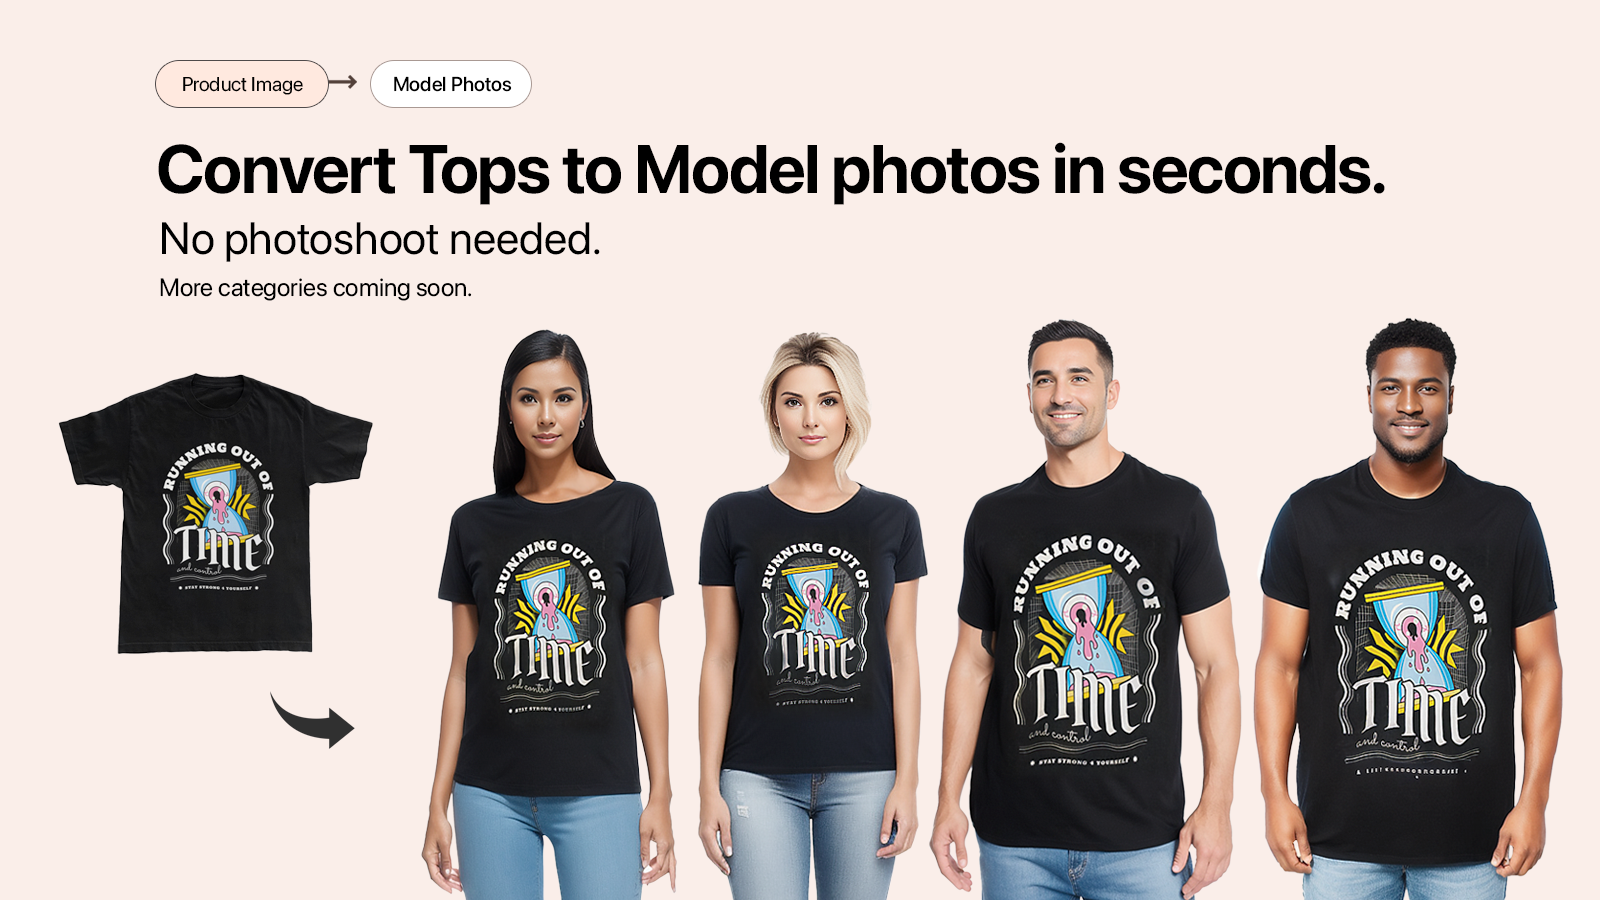 Converta imagens de camisetas em fotos de modelos automaticamente